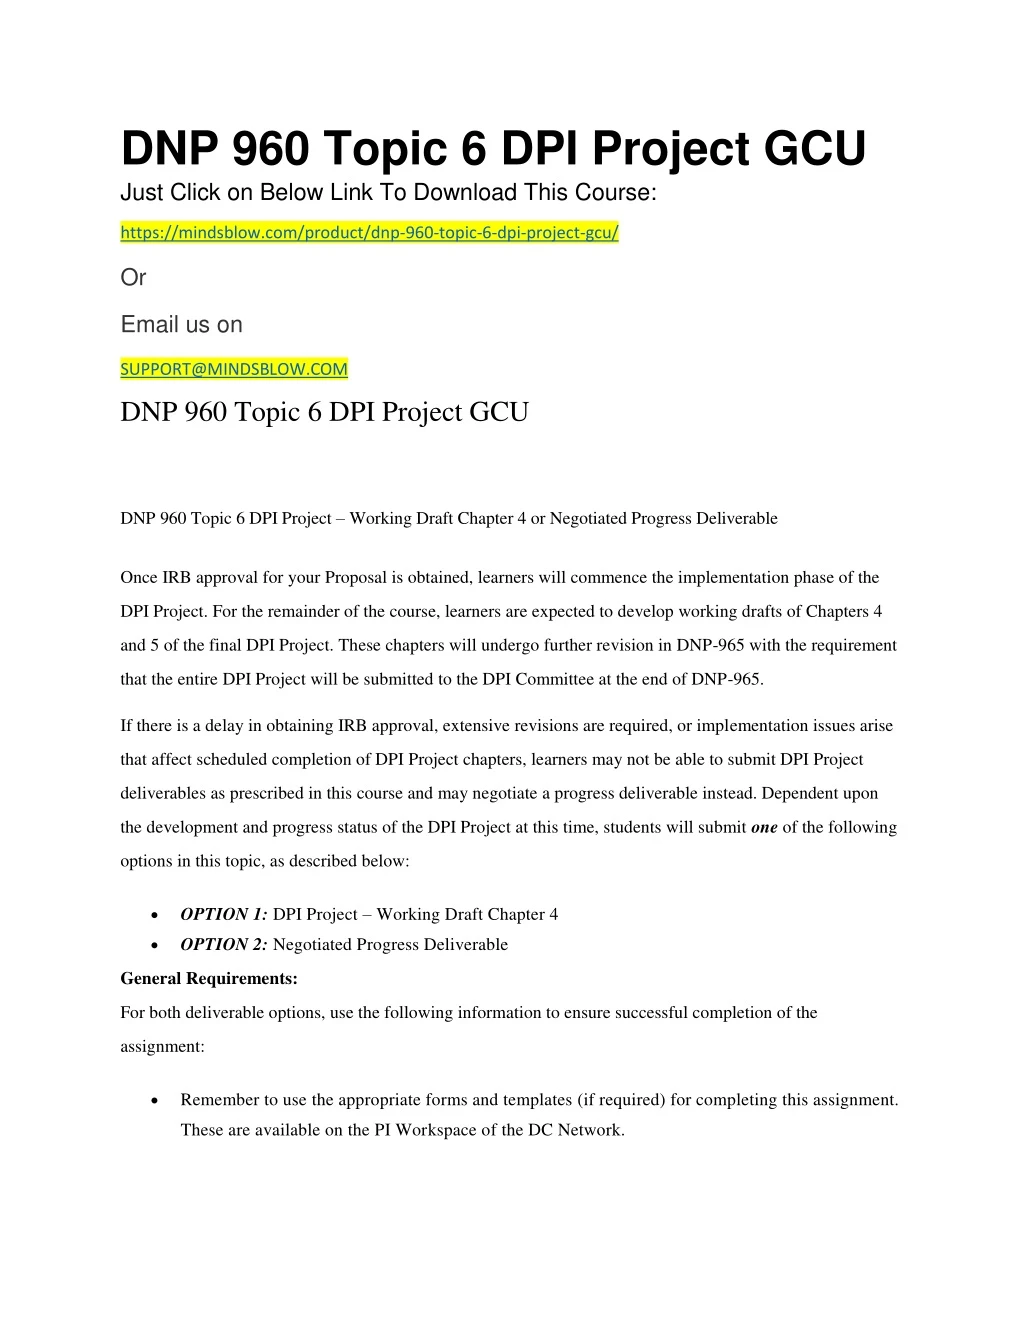 dnp 960 topic 6 dpi project gcu just click